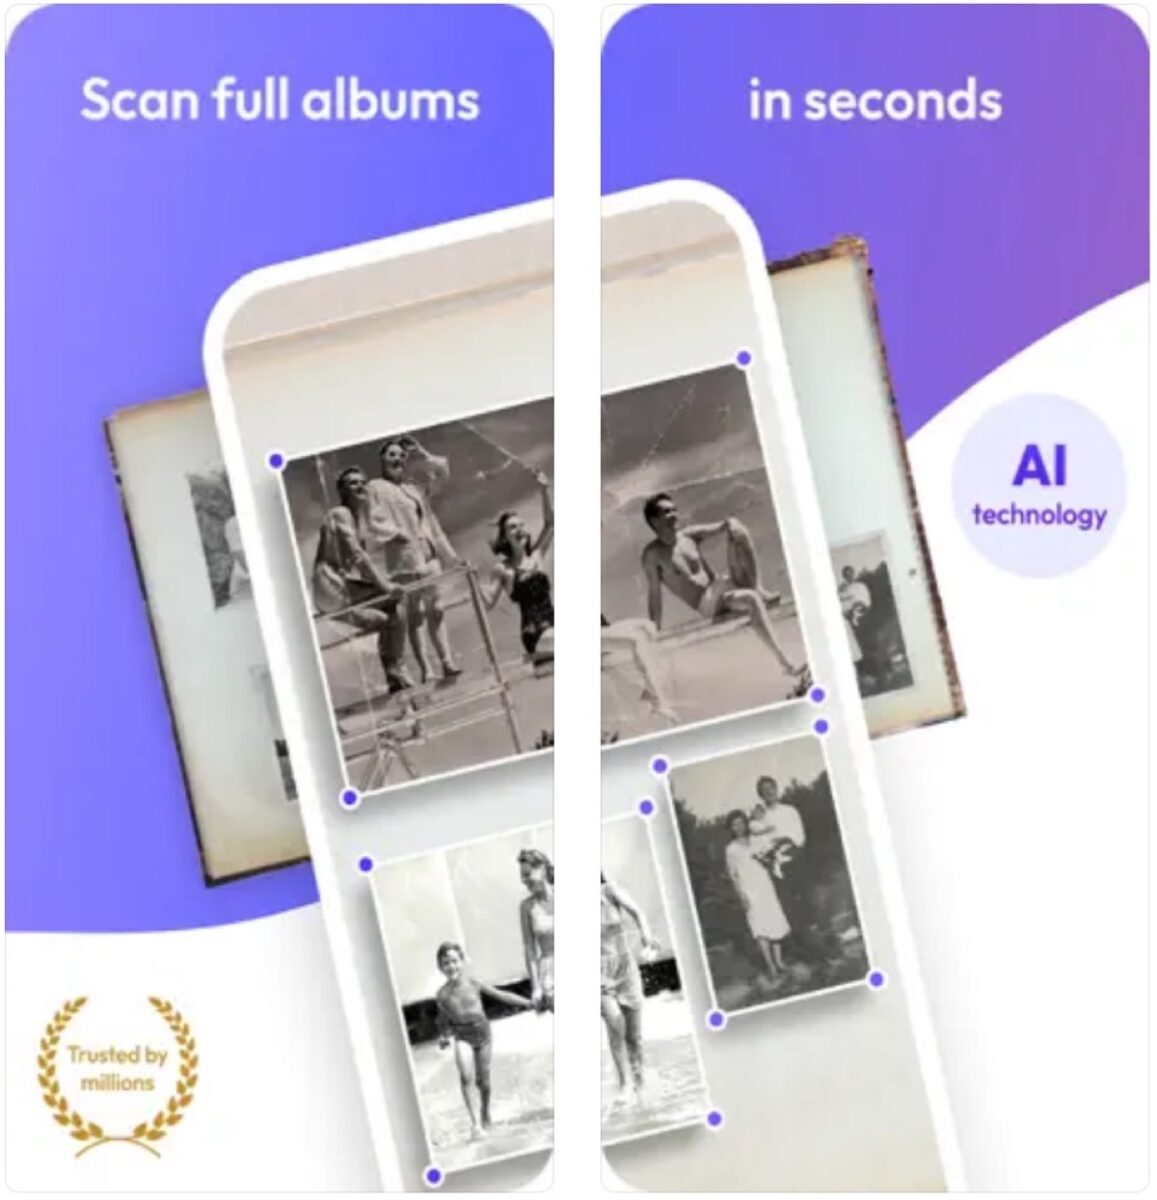 Reimagine, un'app per scansionare, migliorare e condividere le vecchie foto di famiglia